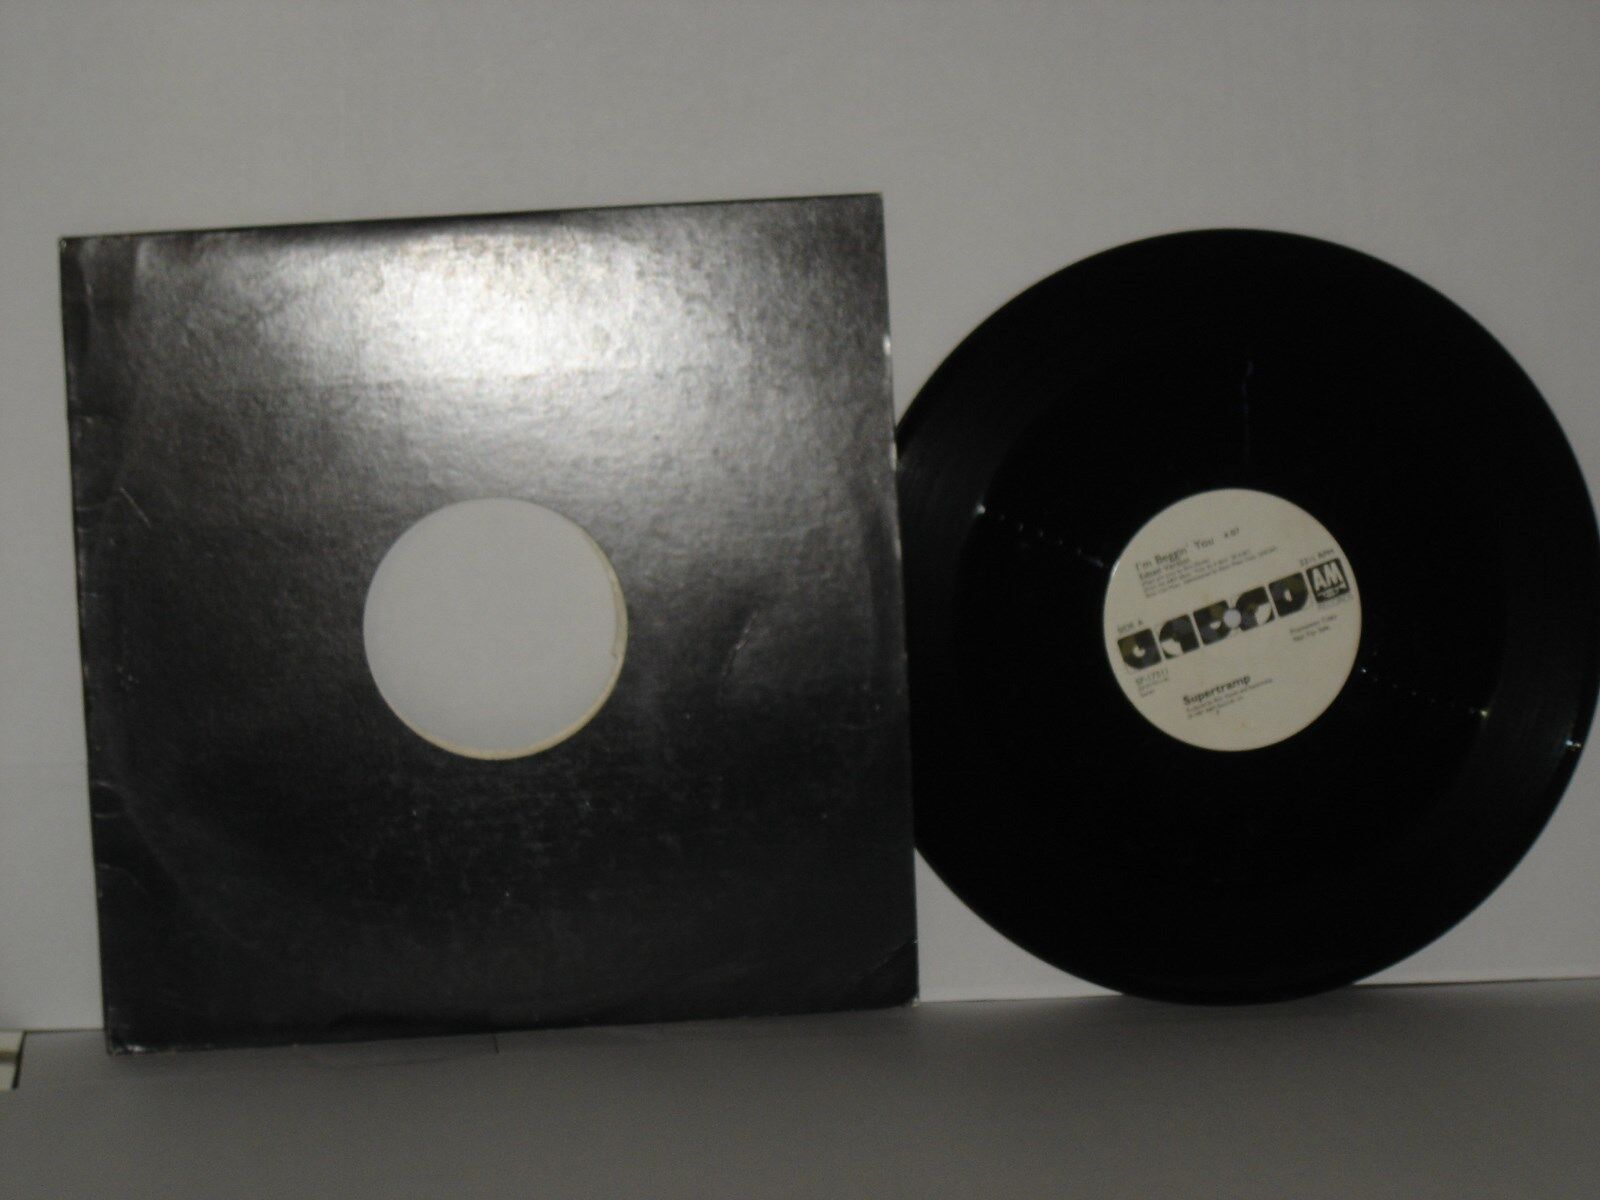 SUPERTRAMP I\'m Beggin\' You x2 Rick Davies 12 inch vinyl promo single A&M 1987